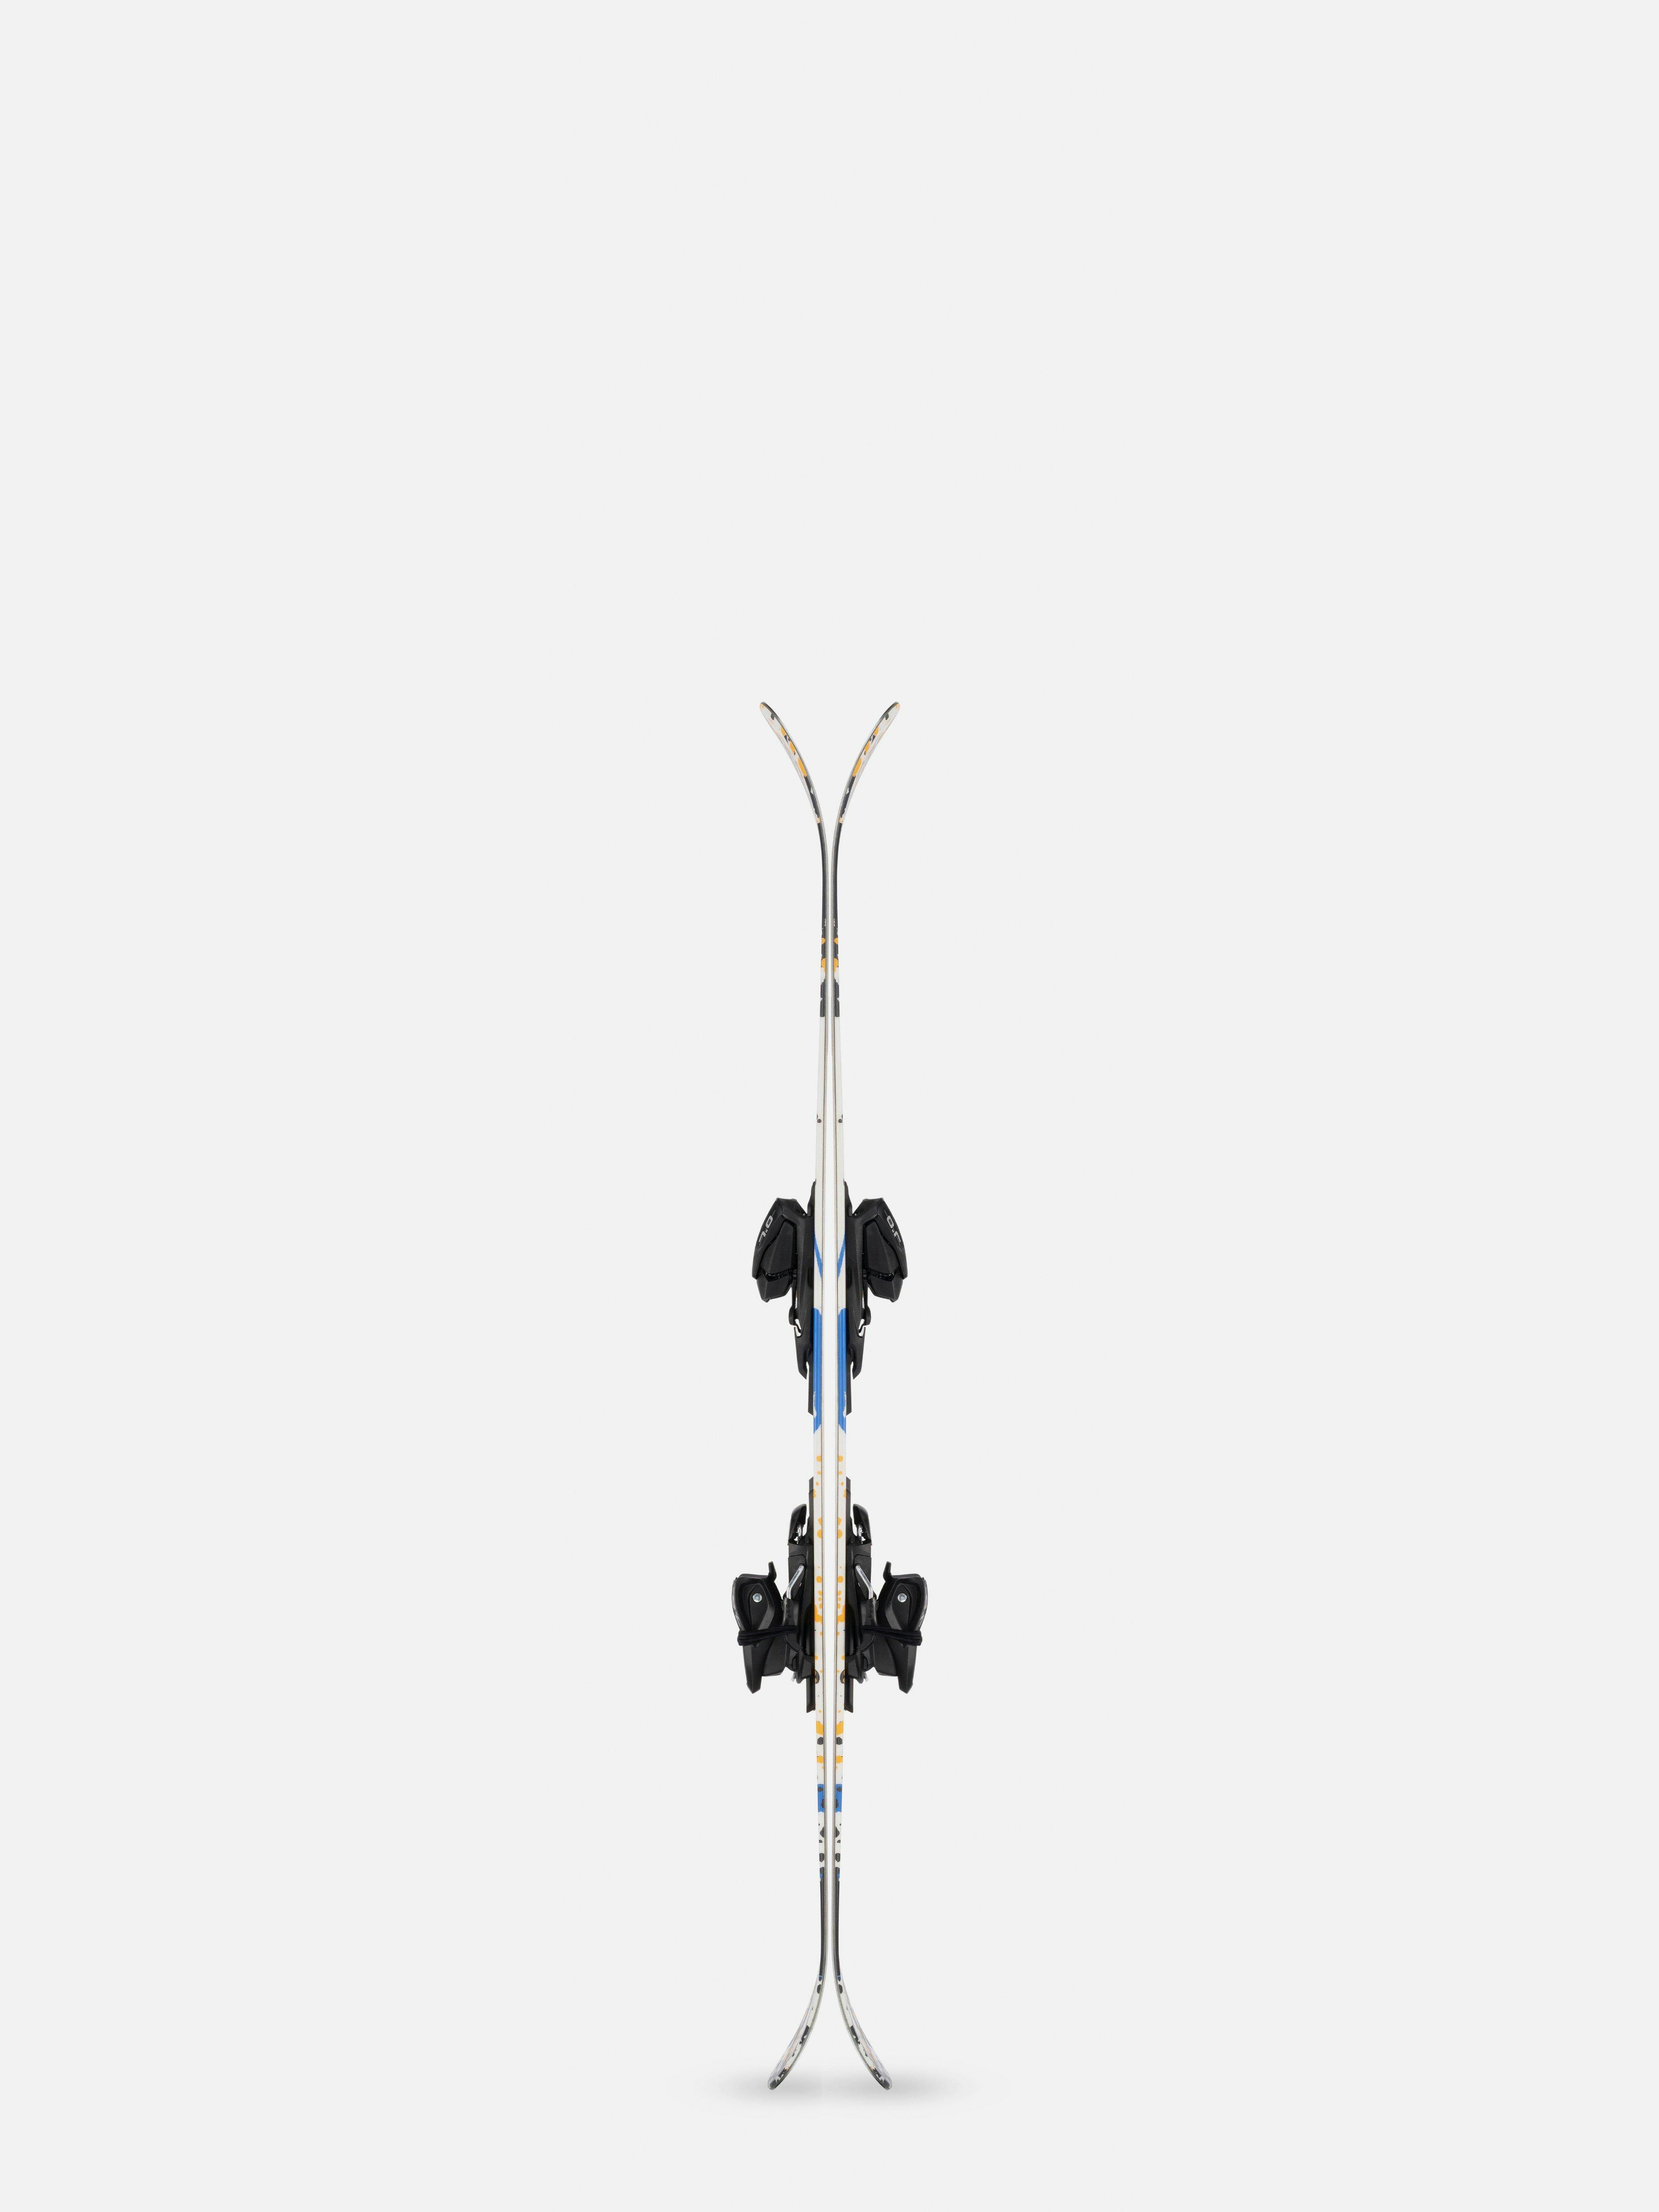 K2 Poacher Jr Skis + FDT 4.5 Bindings · Kids' · 2022 · 129 cm